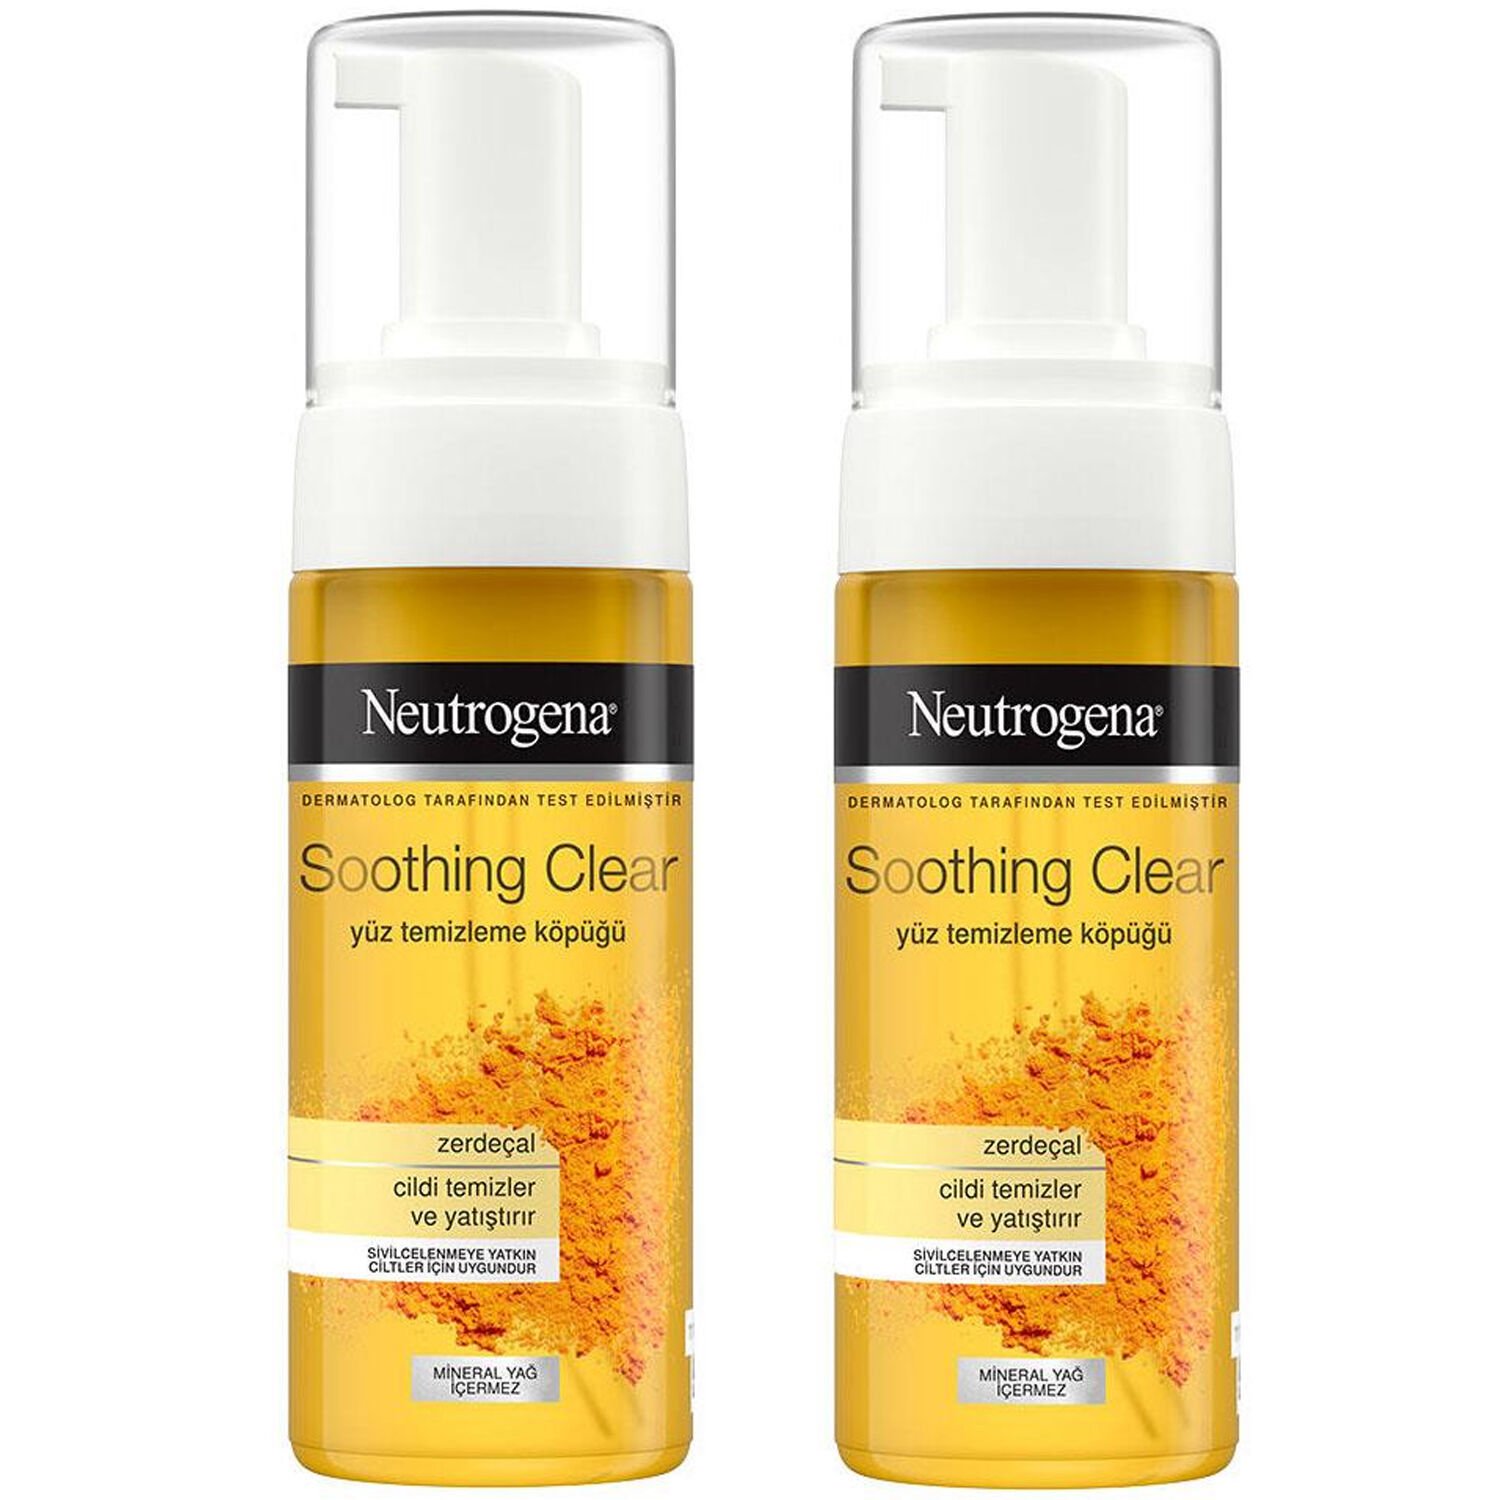 Neutrogena Soothing Clear Yüz Temizleme Köpüğü 150 ml 2 ADET